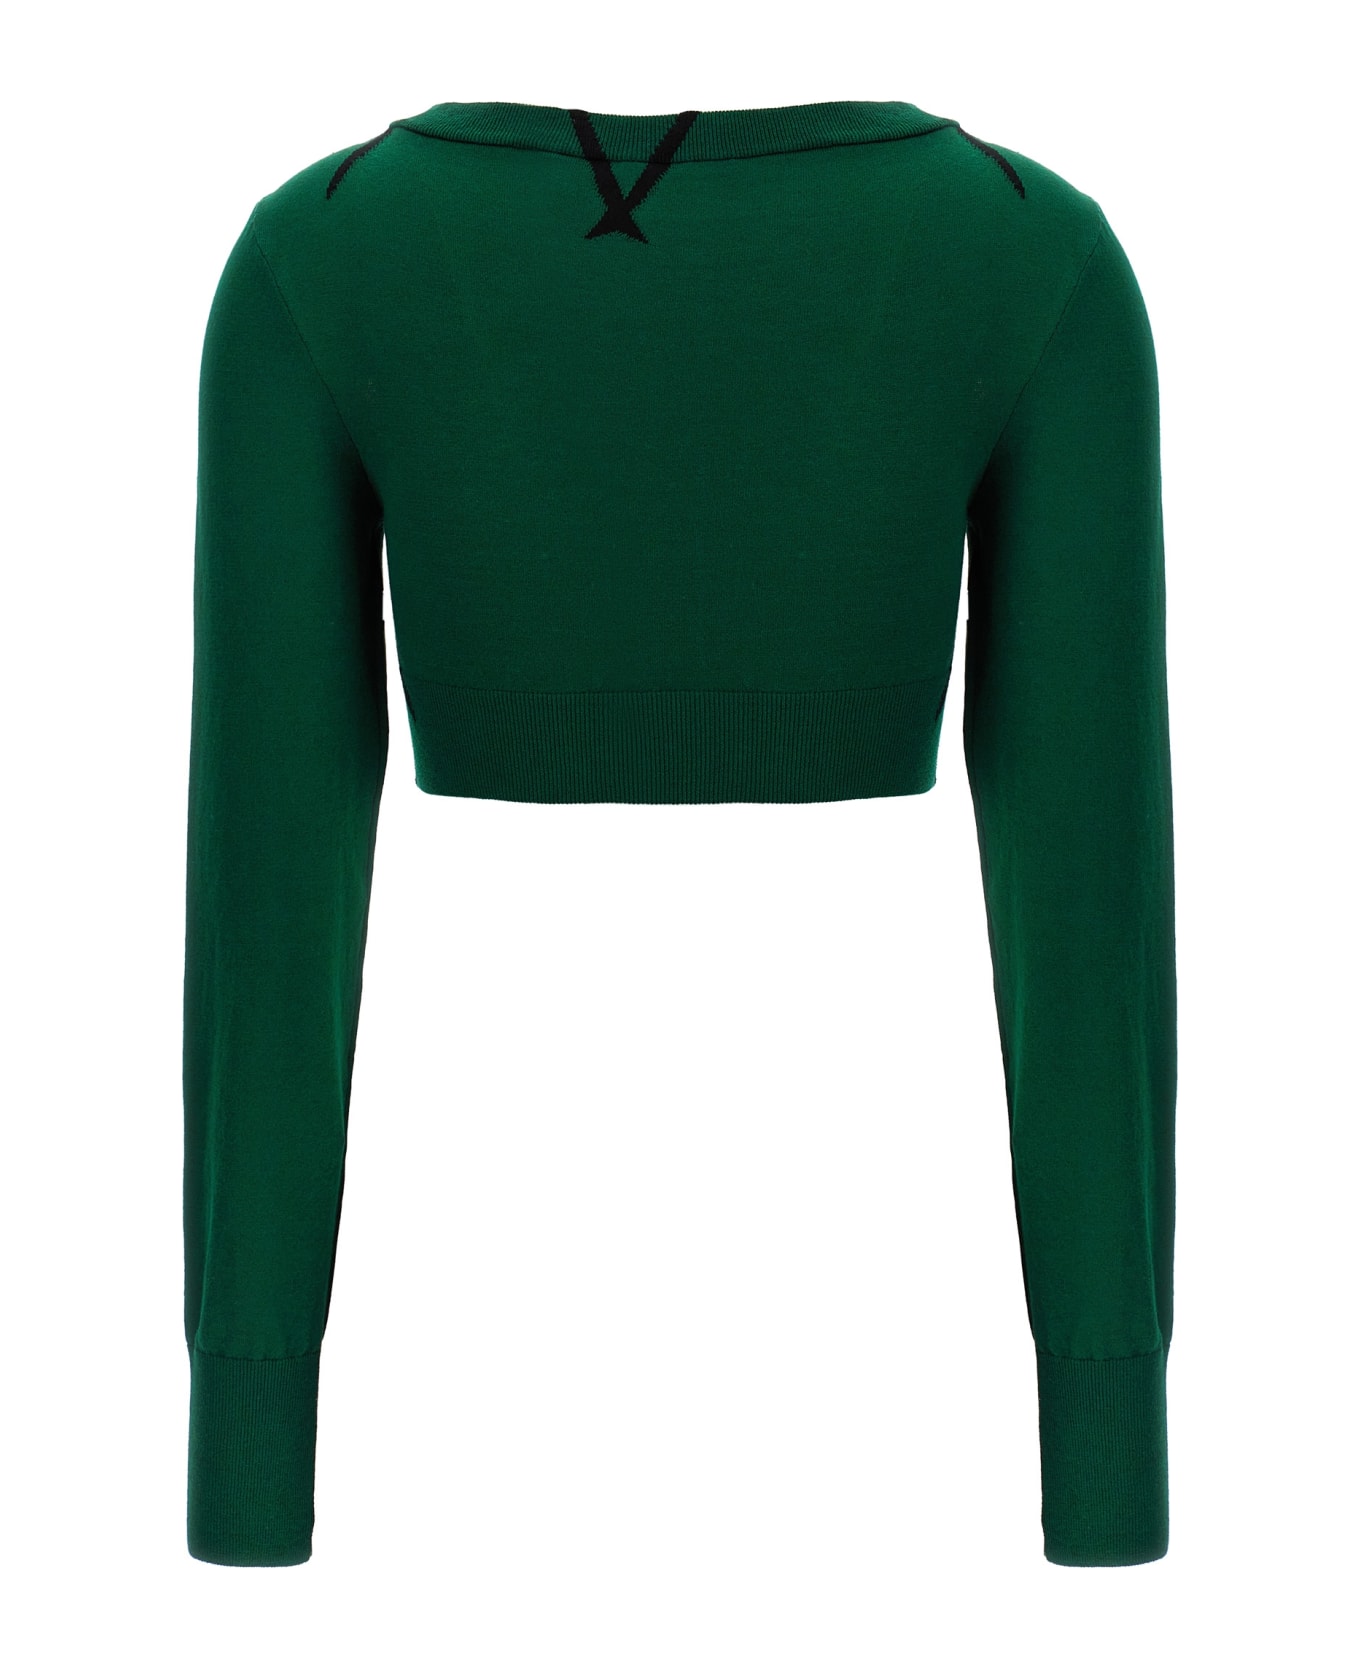 Burberry Argyle Pattern Sweater - Green ニットウェア